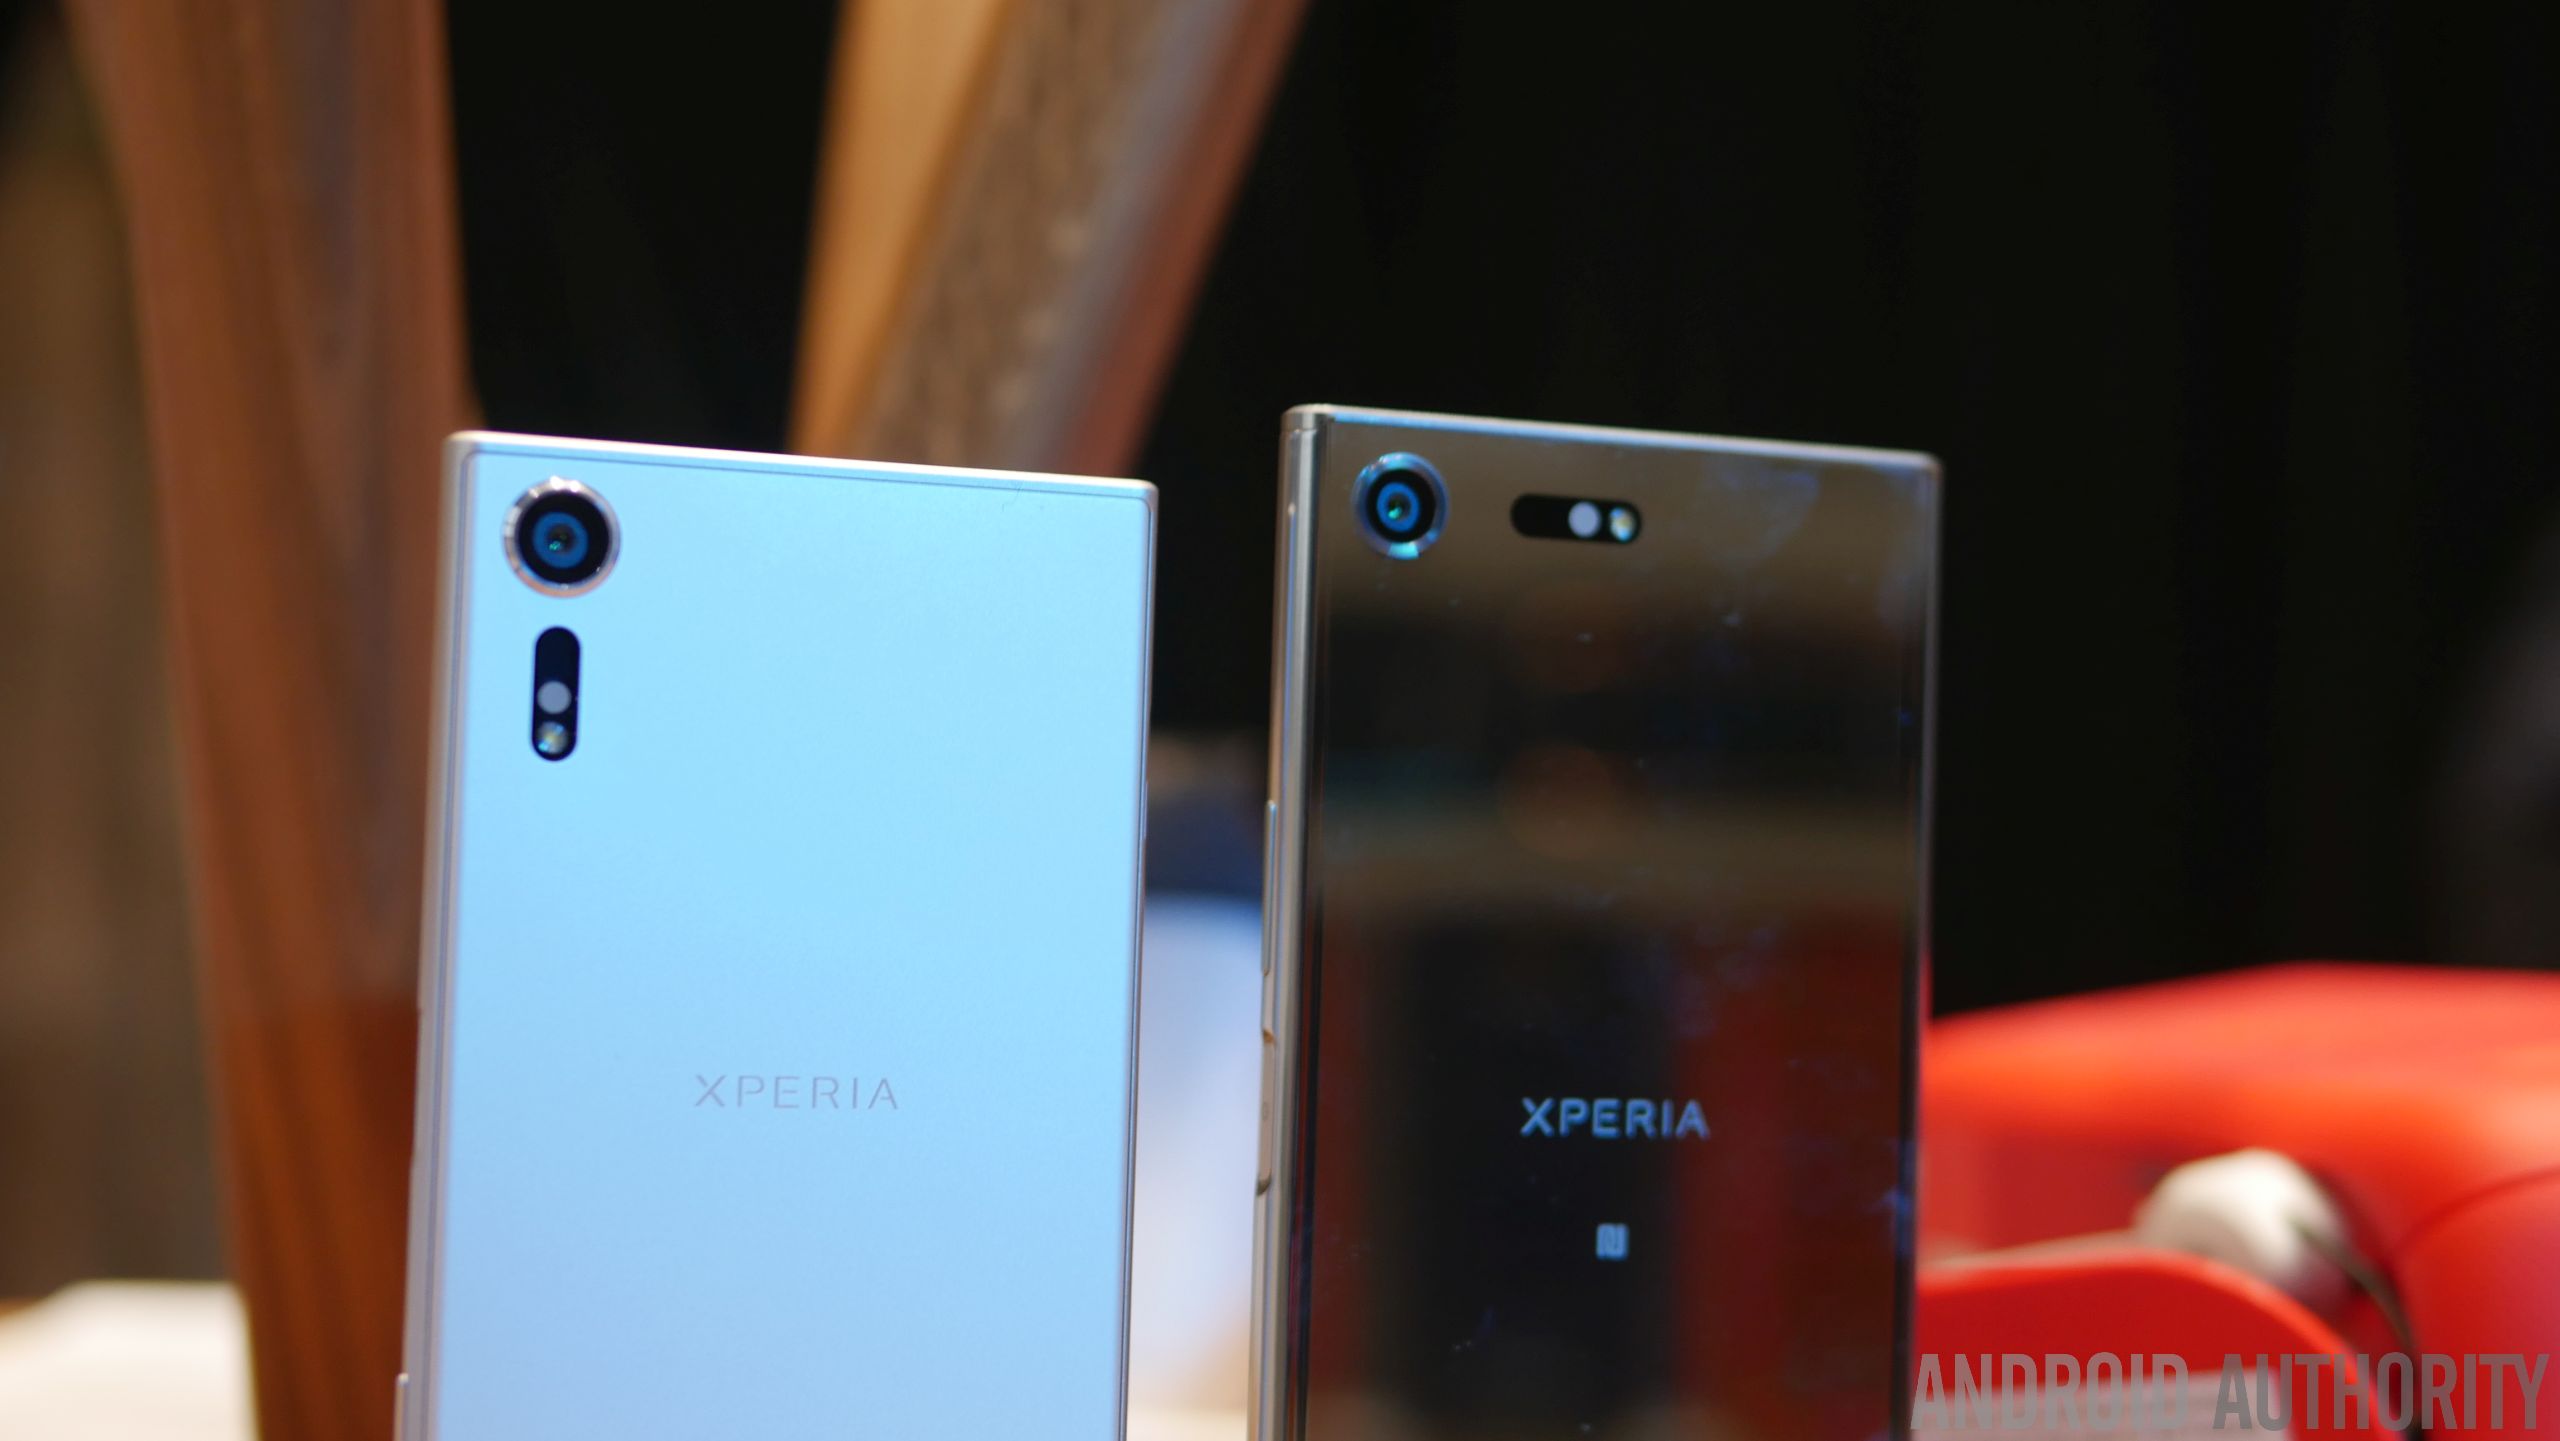 Sony Xperia XZ Premium, Xperia XZs announced: Everything you need 